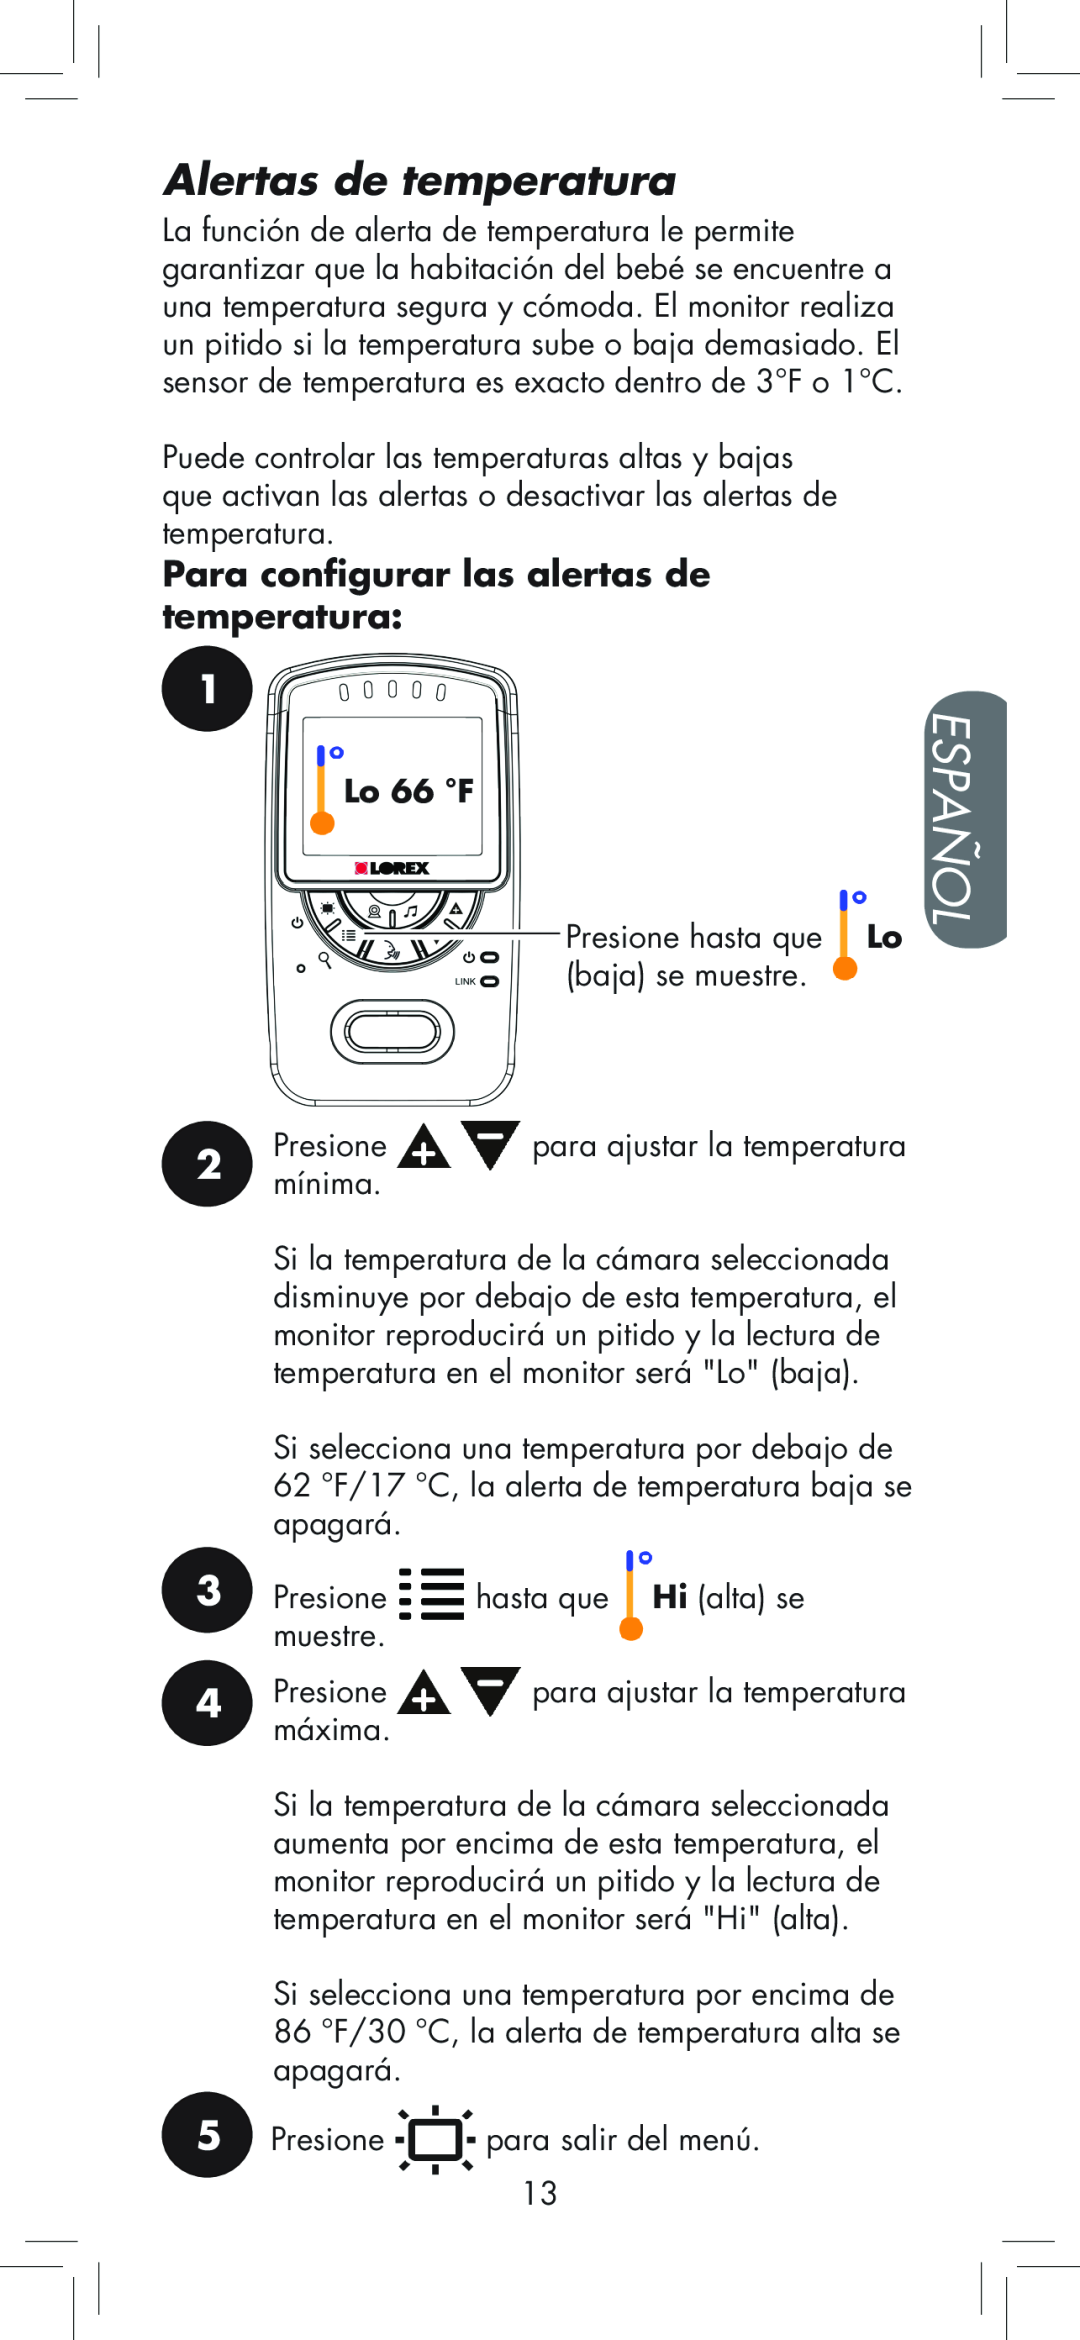 LOREX Technology BB2411 manual Alertas de temperatura, Español, Para configurar las alertas de temperatura 